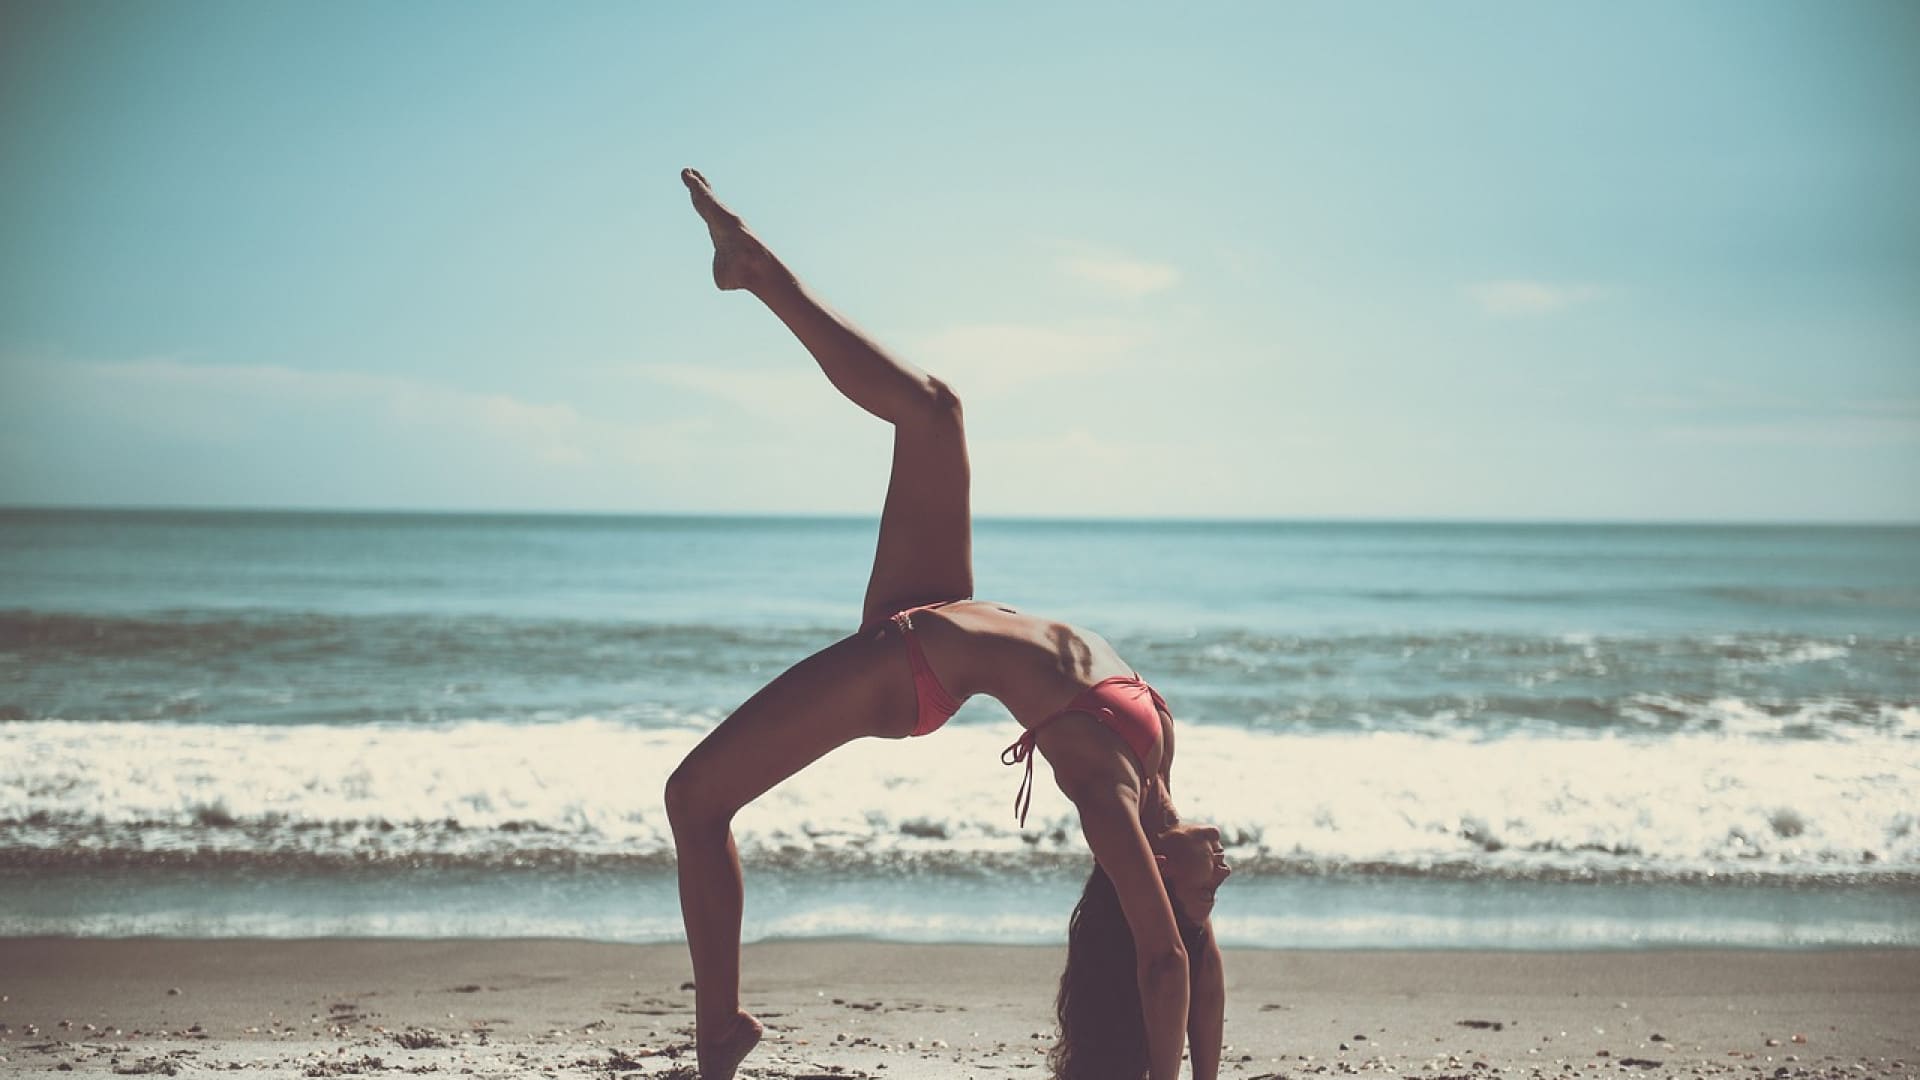 Une personne pratiquant un yoga en faisant un pont sur une plage avec l'océan en arrière-plan.